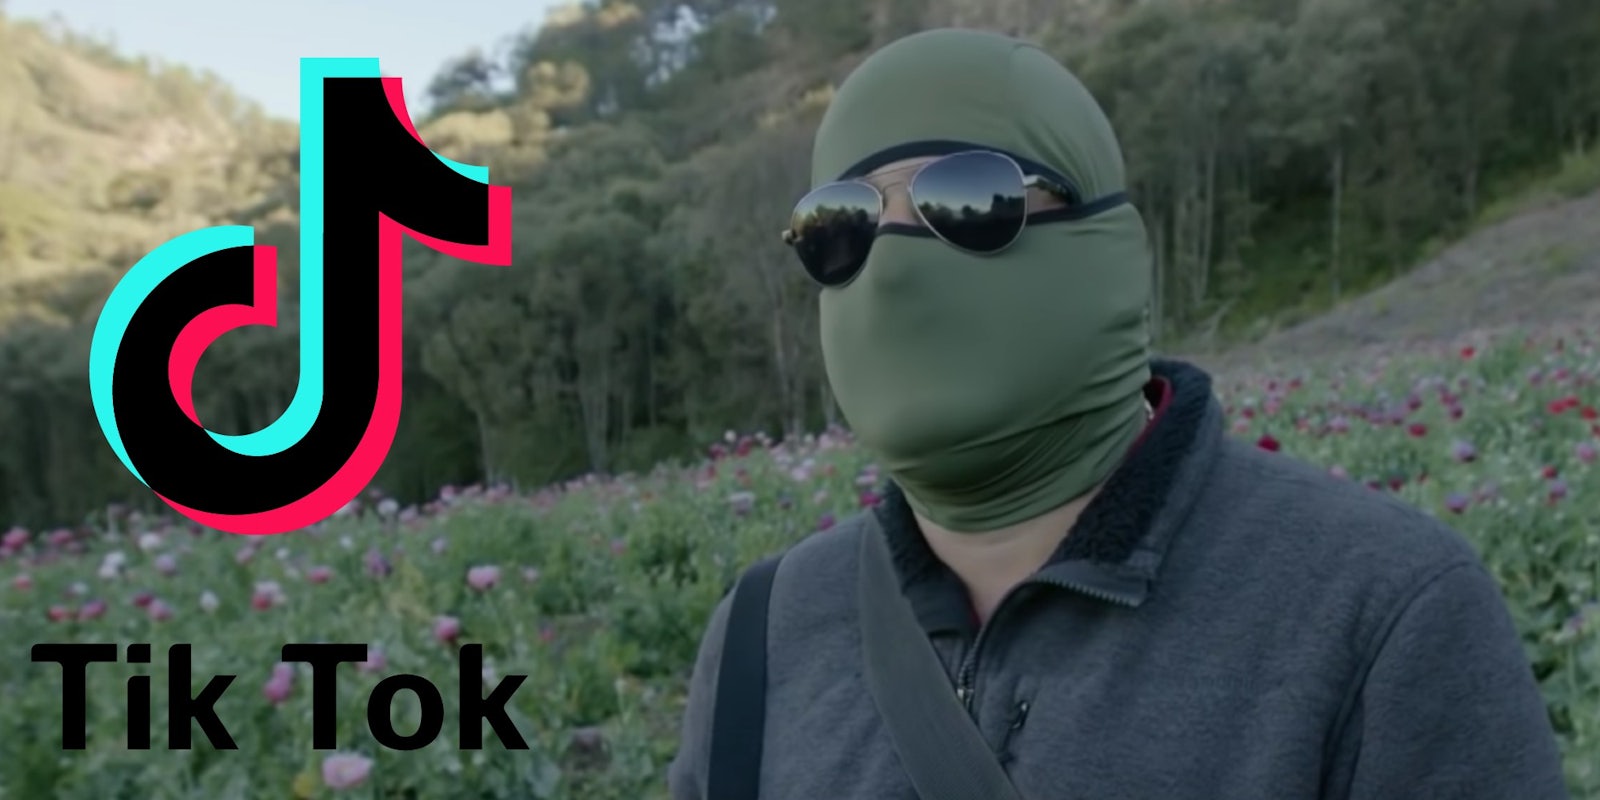 The TikTok logo next to a drug cartel member